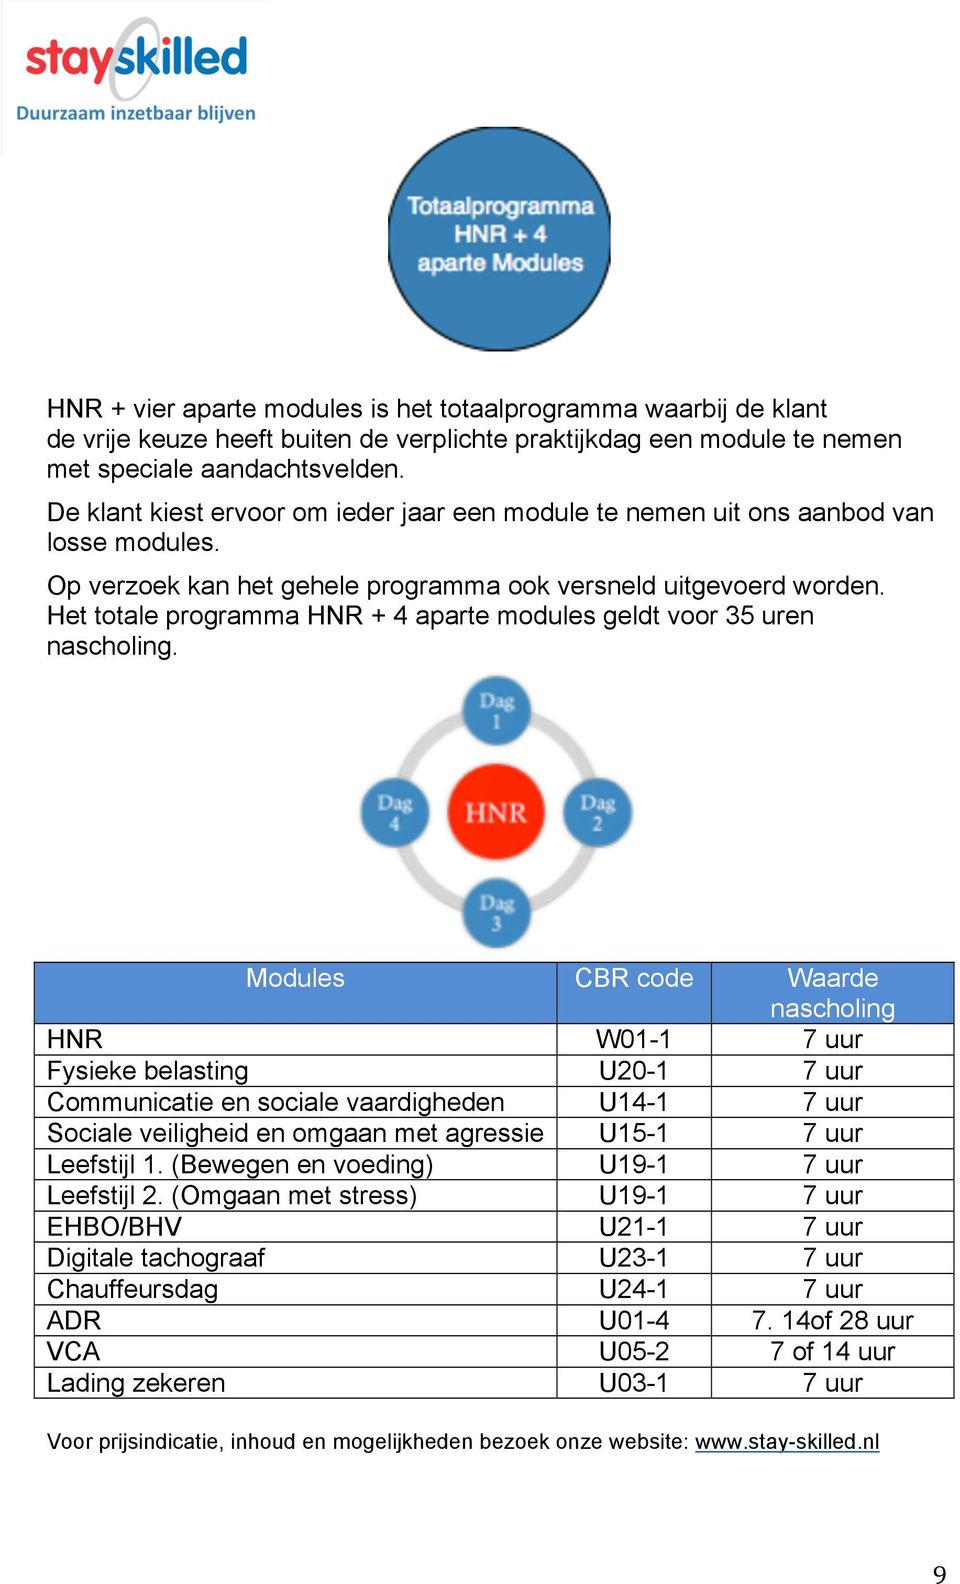 Het totale programma HNR + 4 aparte modules geldt voor 35 uren nascholing.